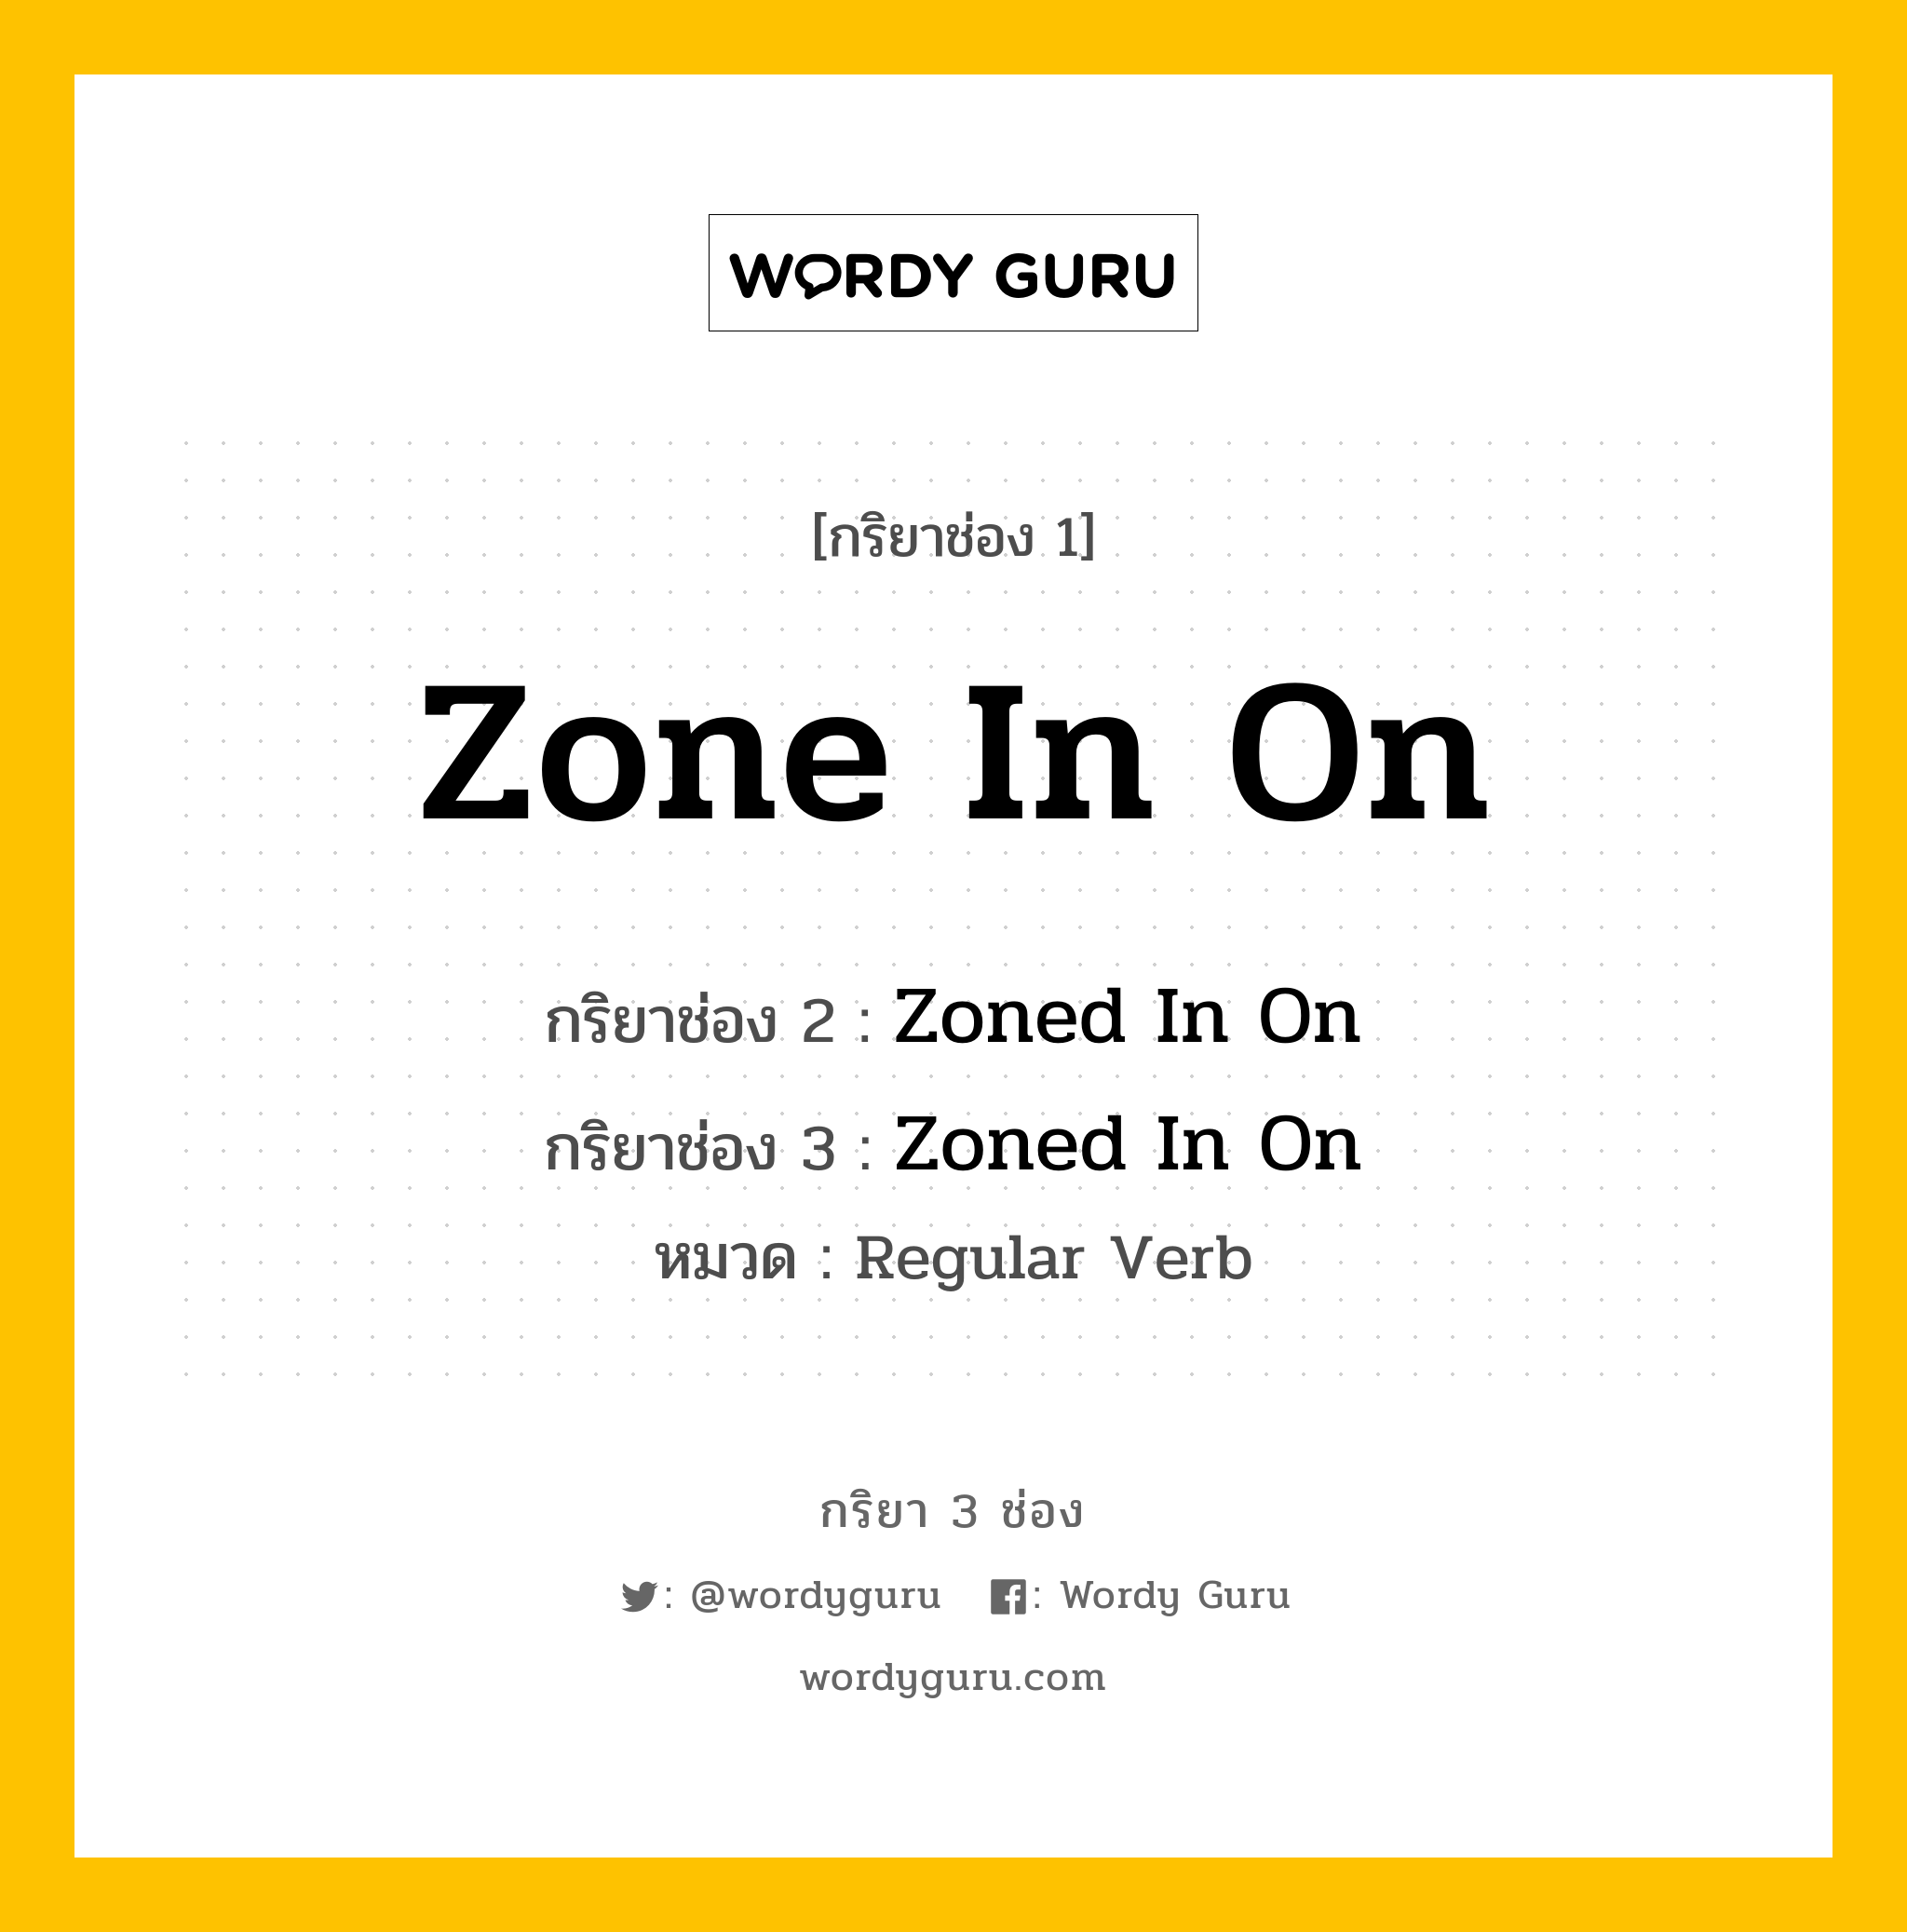 กริยา 3 ช่อง ของ Zone In On คืออะไร?, กริยาช่อง 1 Zone In On กริยาช่อง 2 Zoned In On กริยาช่อง 3 Zoned In On หมวด Regular Verb หมวด Regular Verb